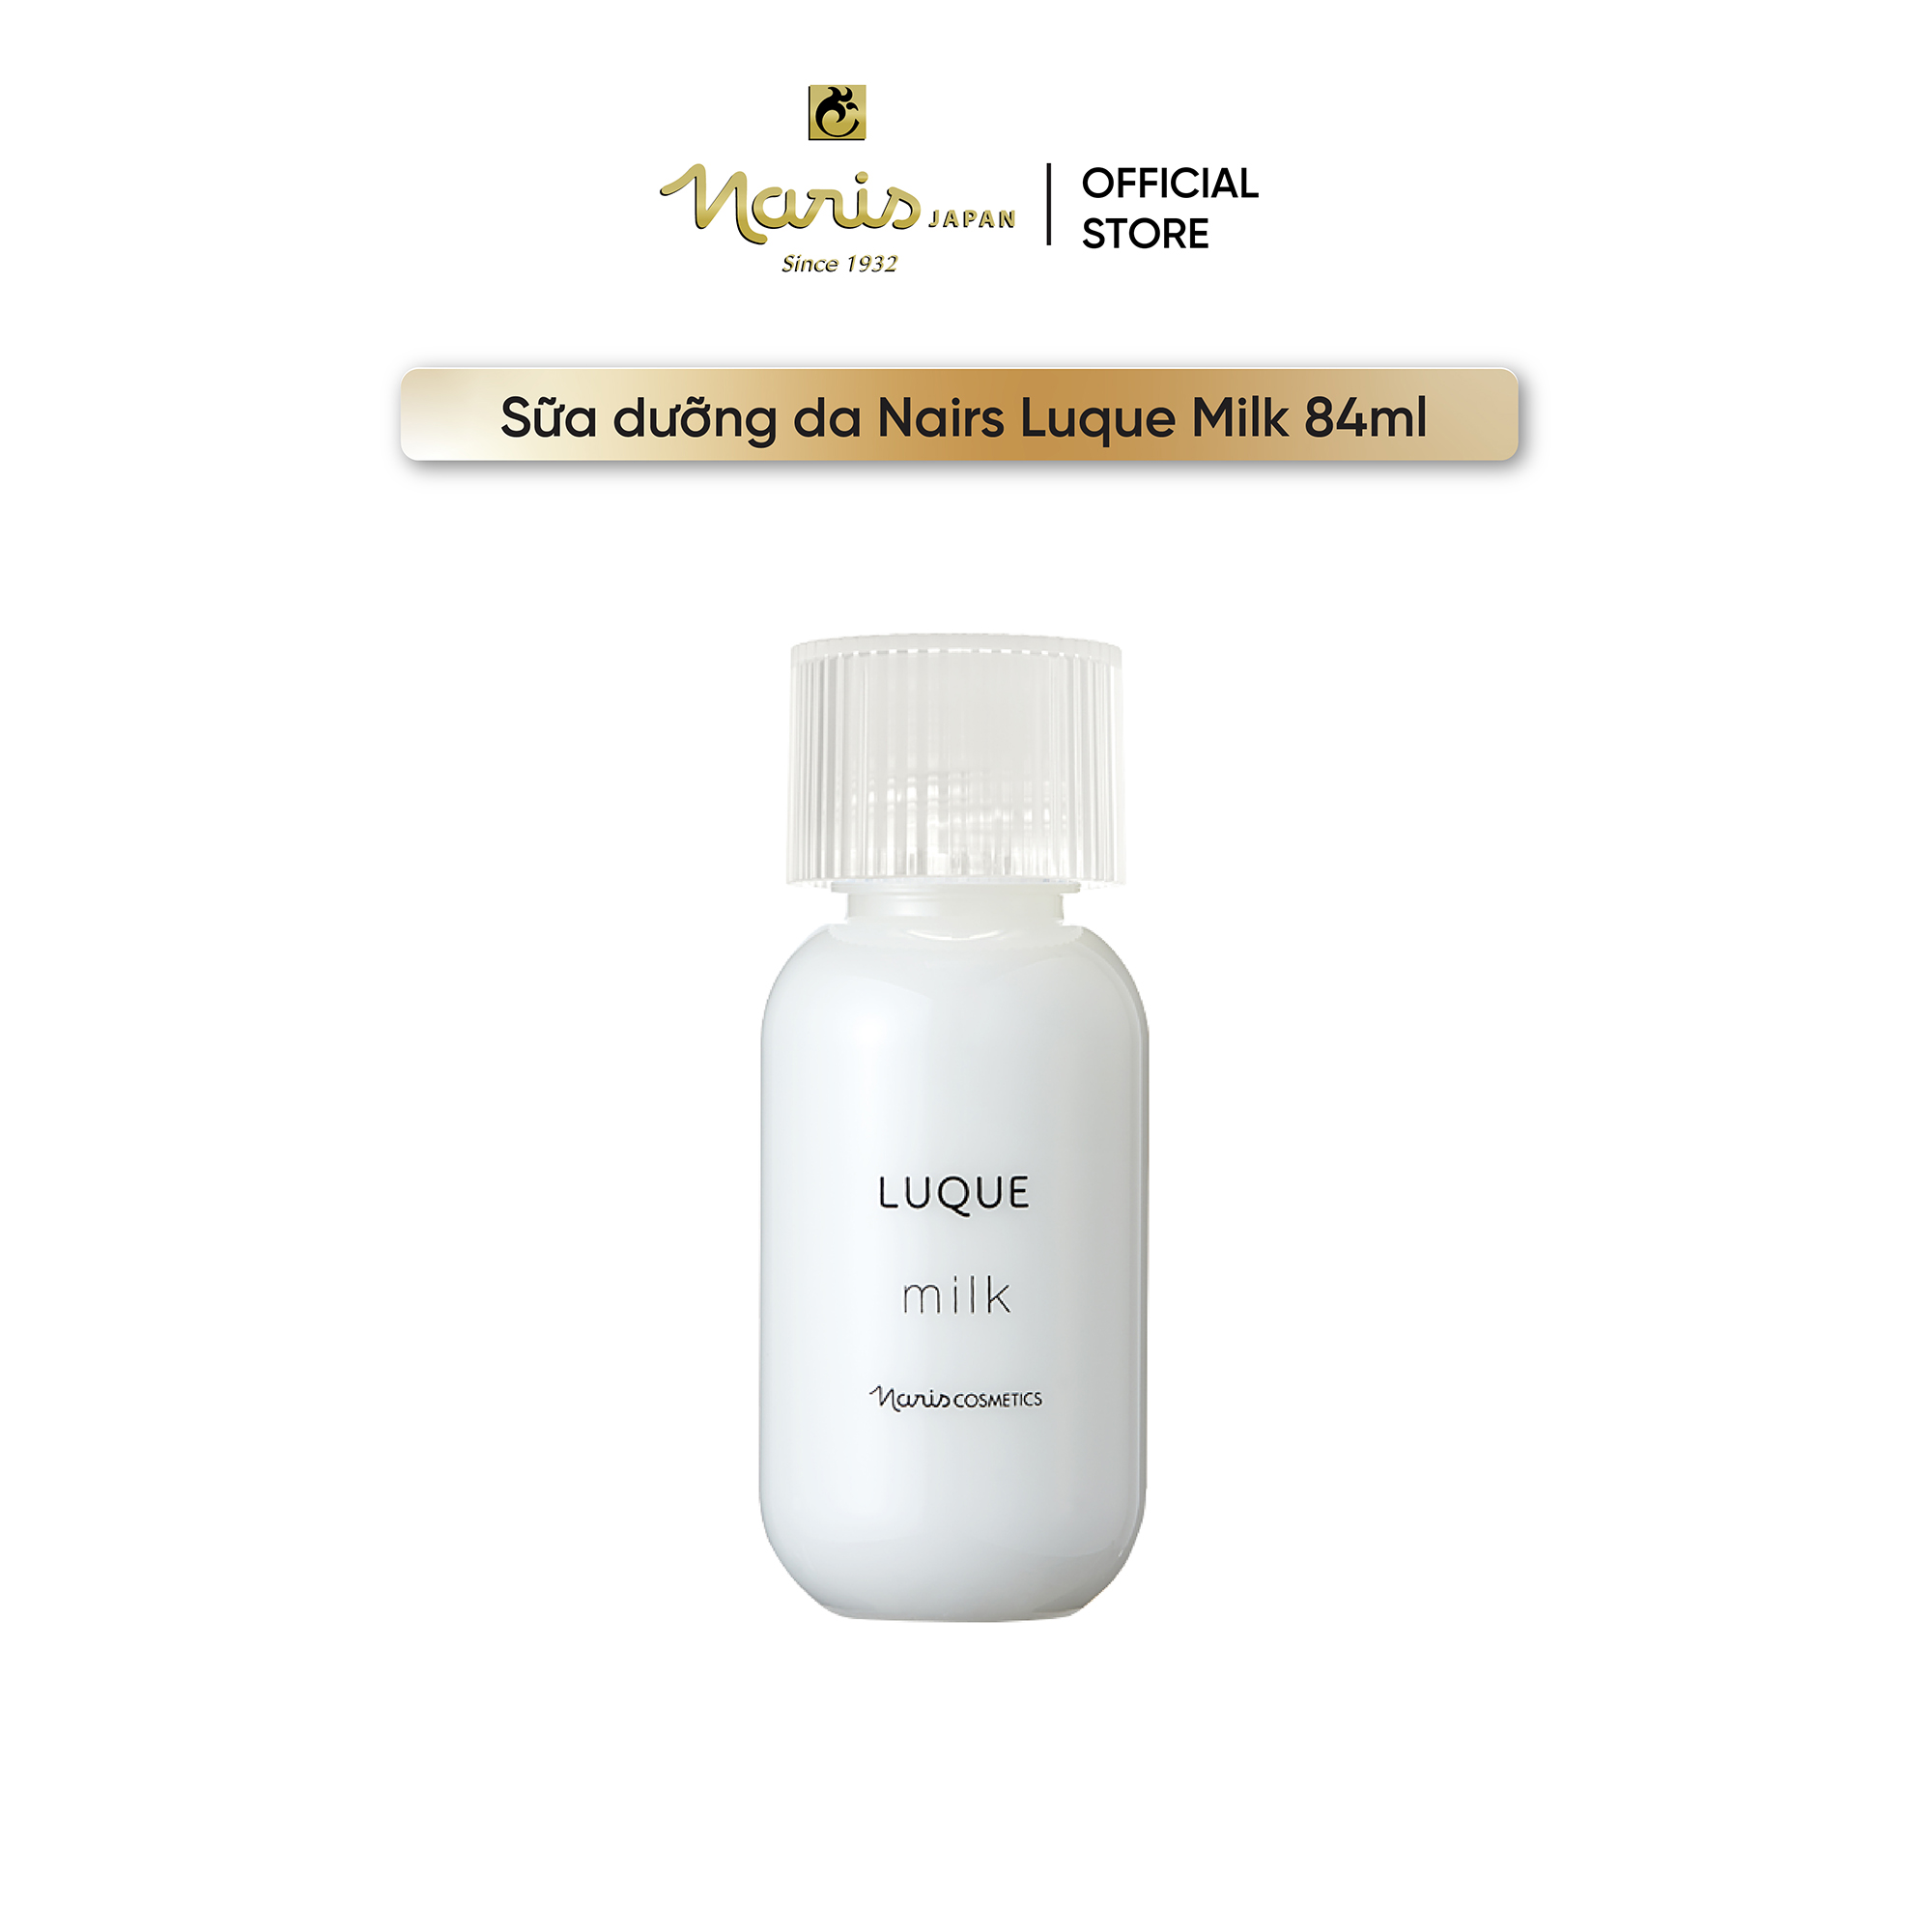 Sữa dưỡng da Nairs Luque Milk 84ml